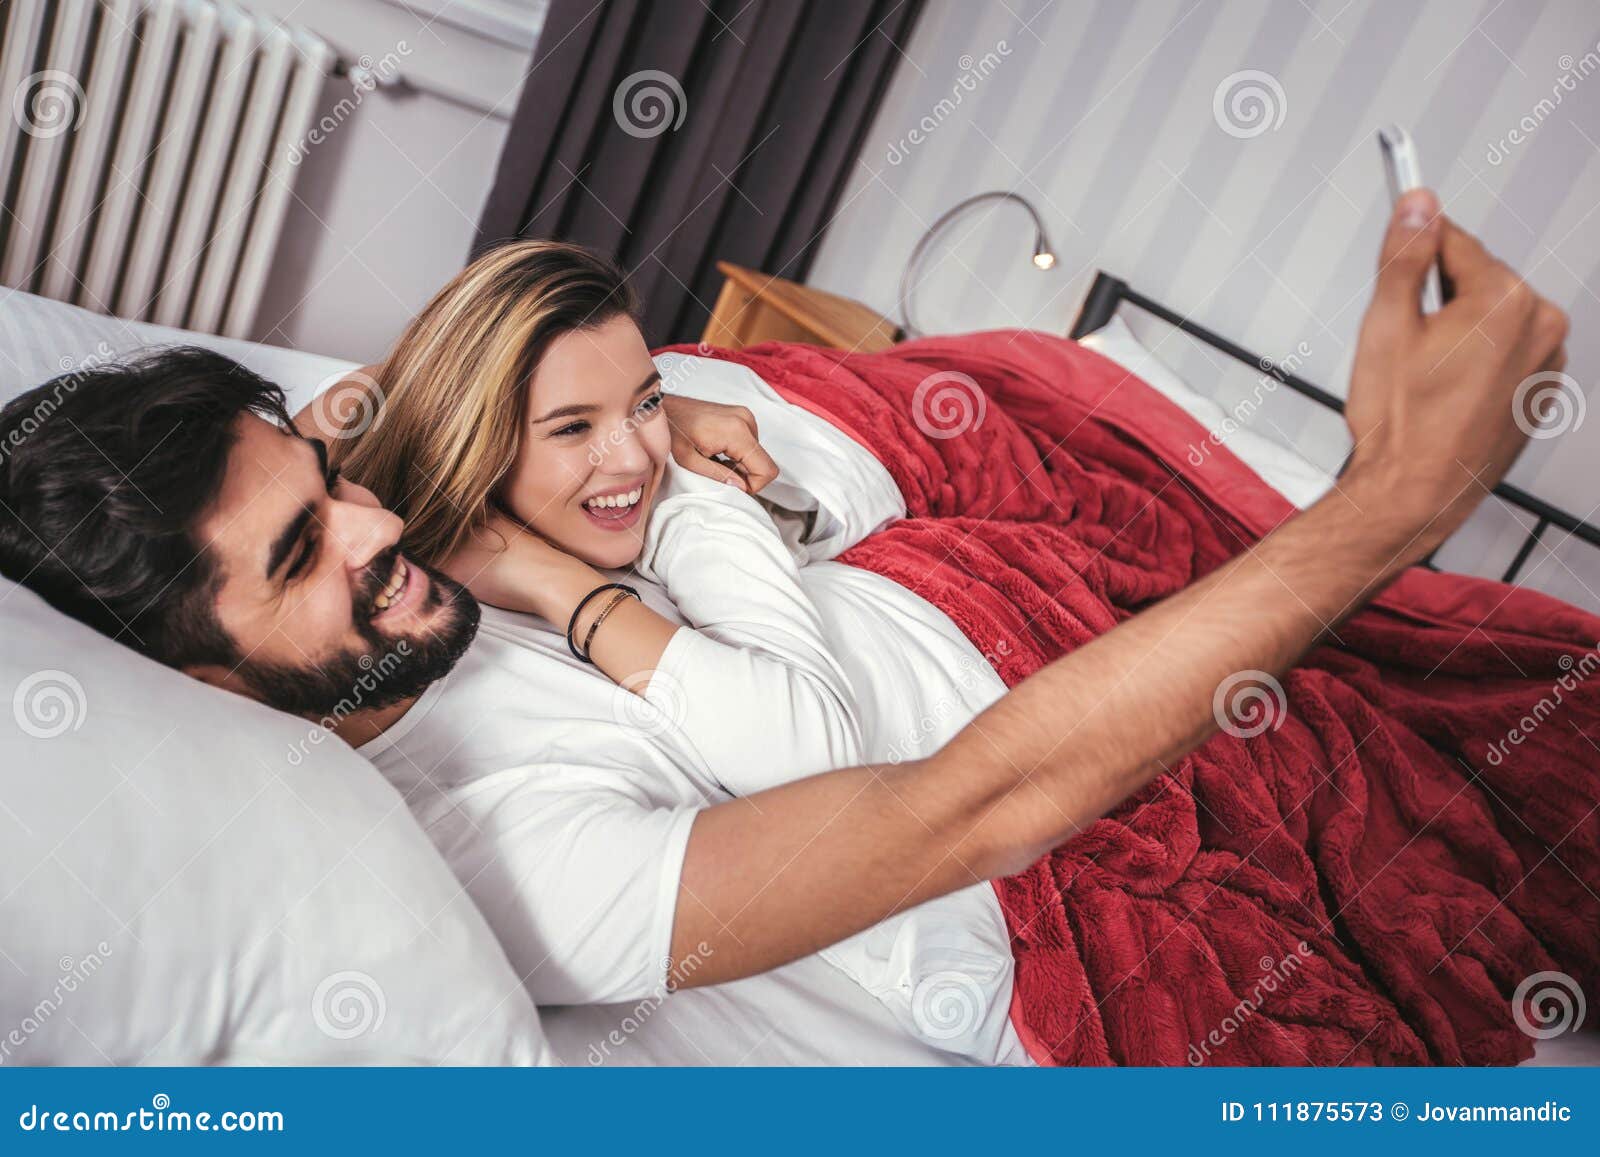 couple bed selfie